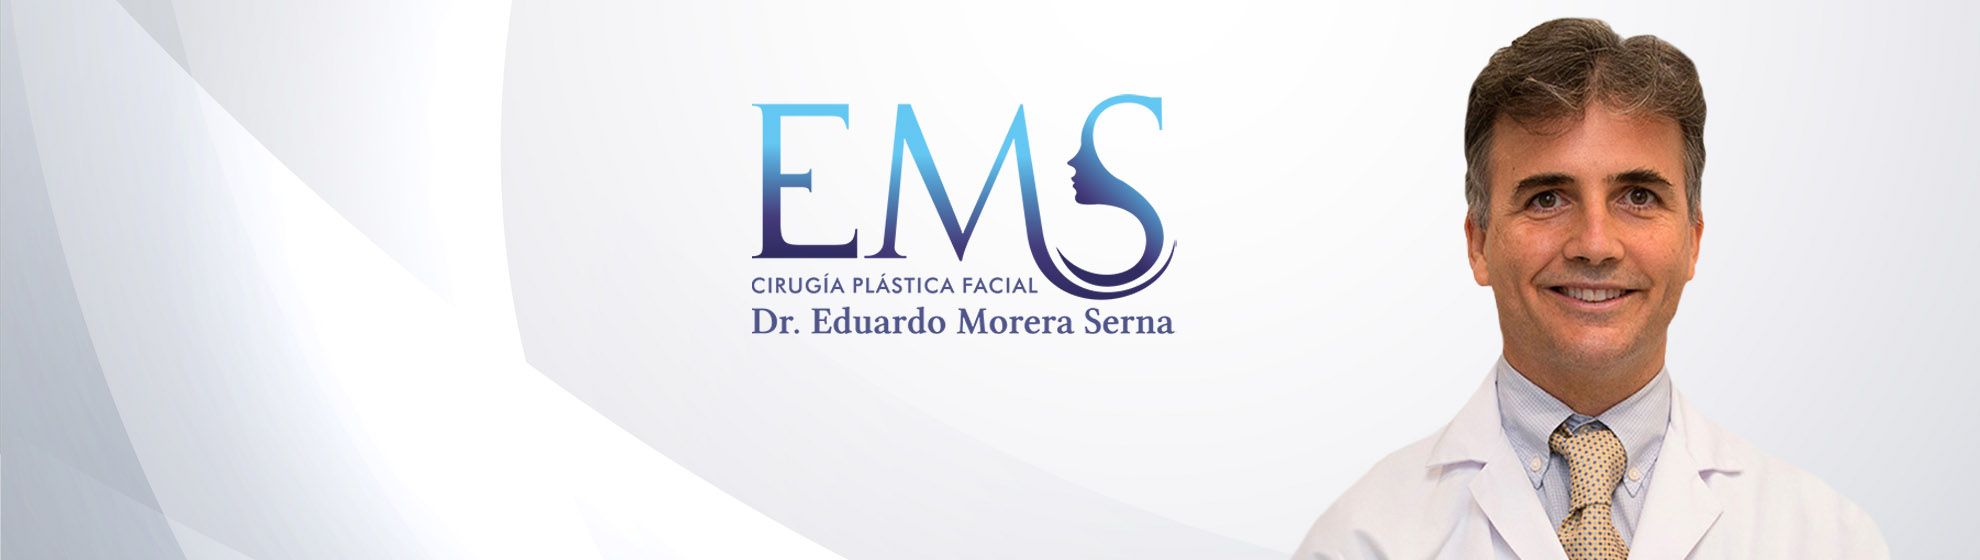 Dr. Eduardo Morera Serna